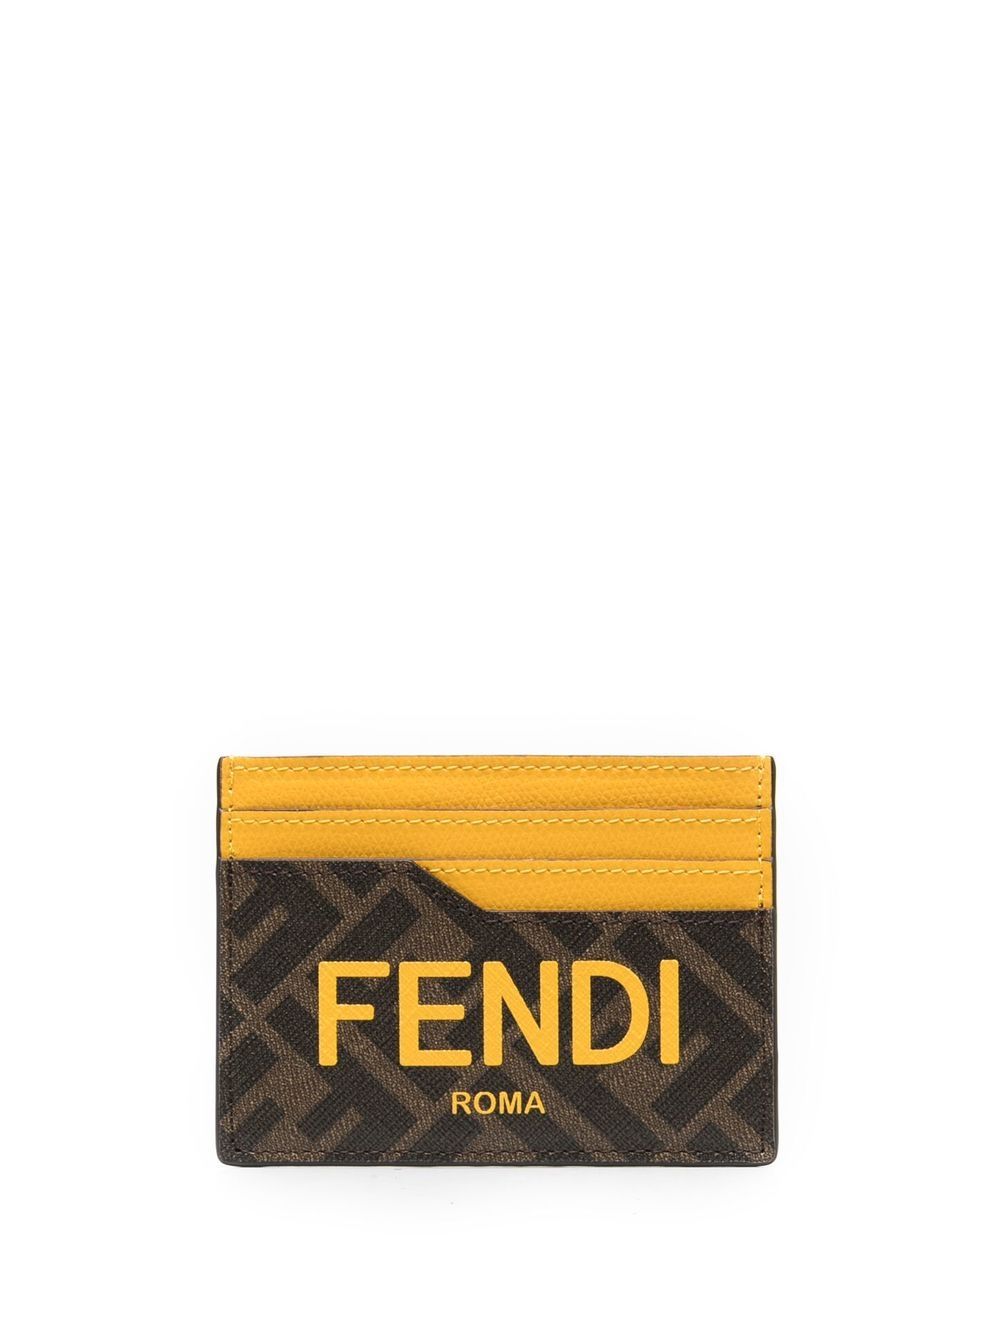 FENDI LOGO CARD HOLDER